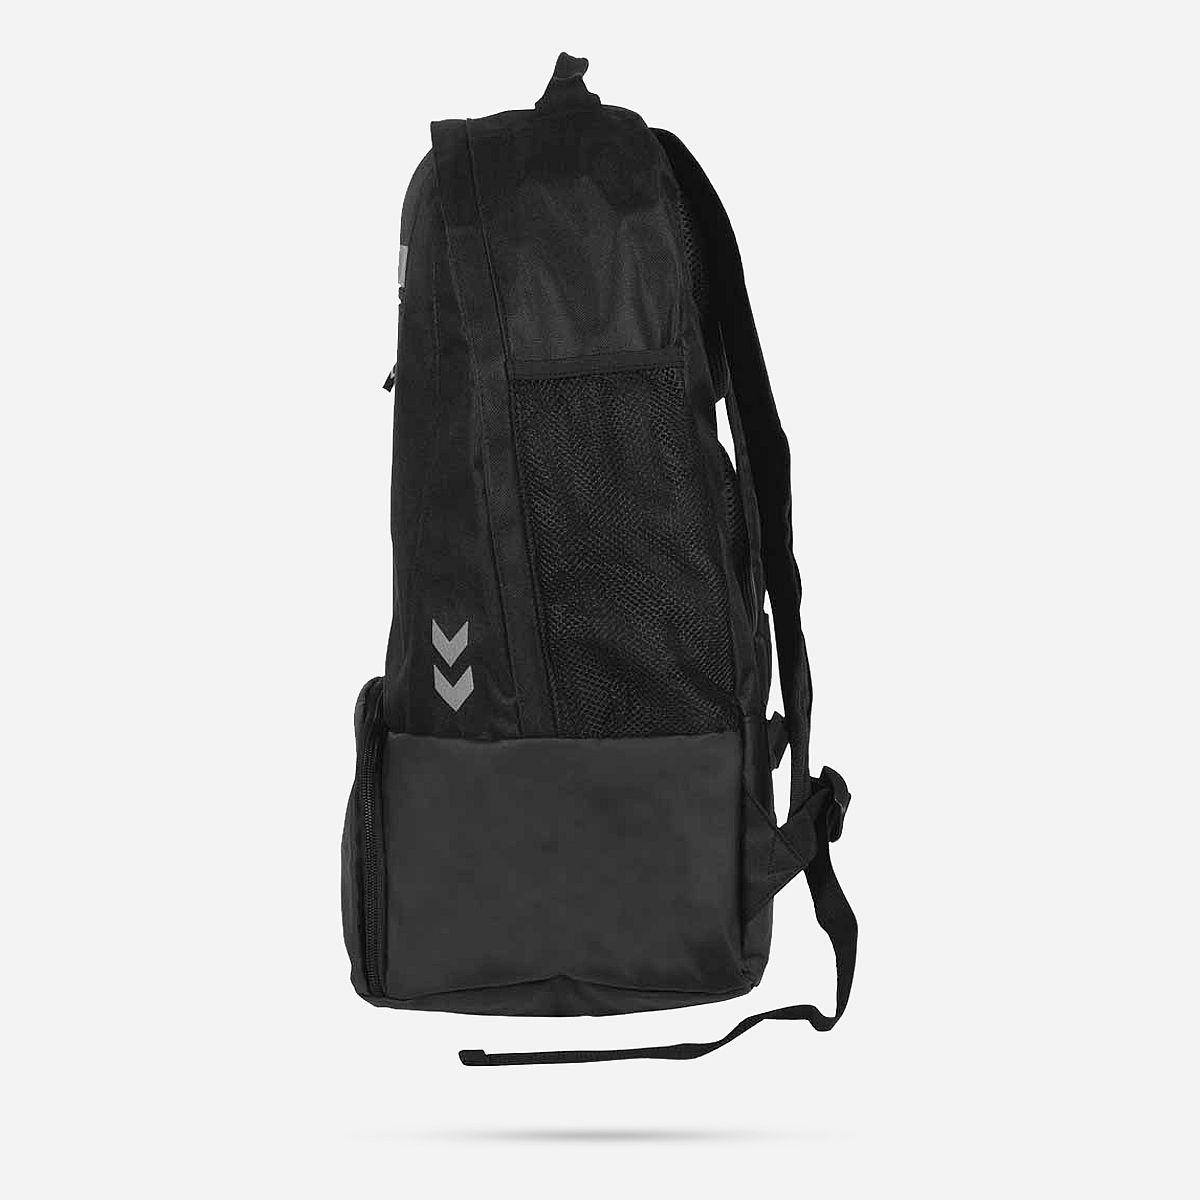 AN229710 Leeston backpack